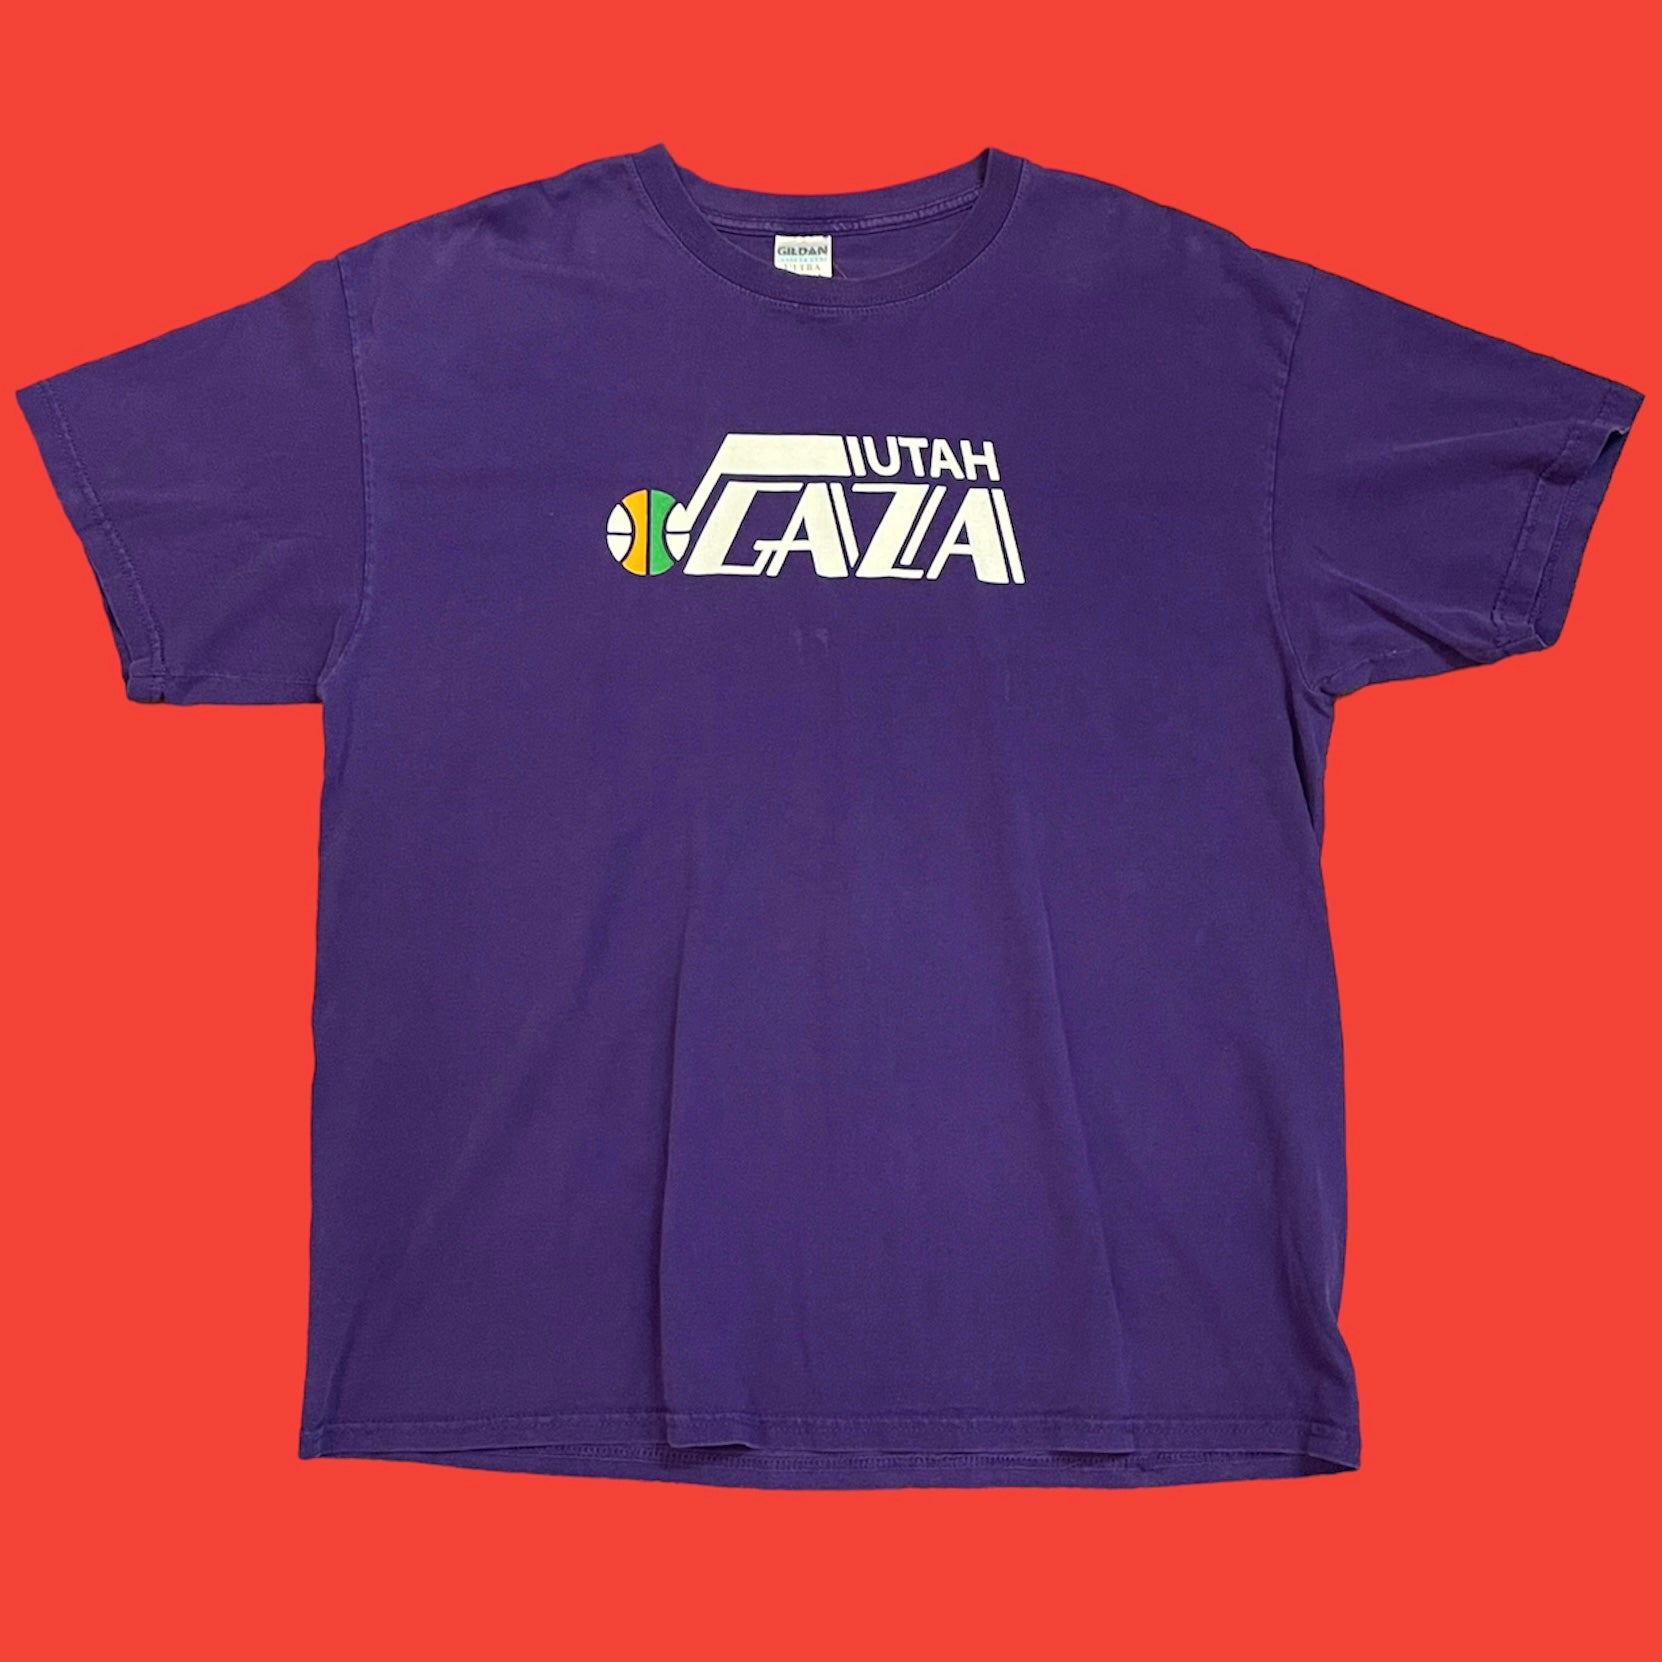 Utah Gaza Logo T-Shirt XL